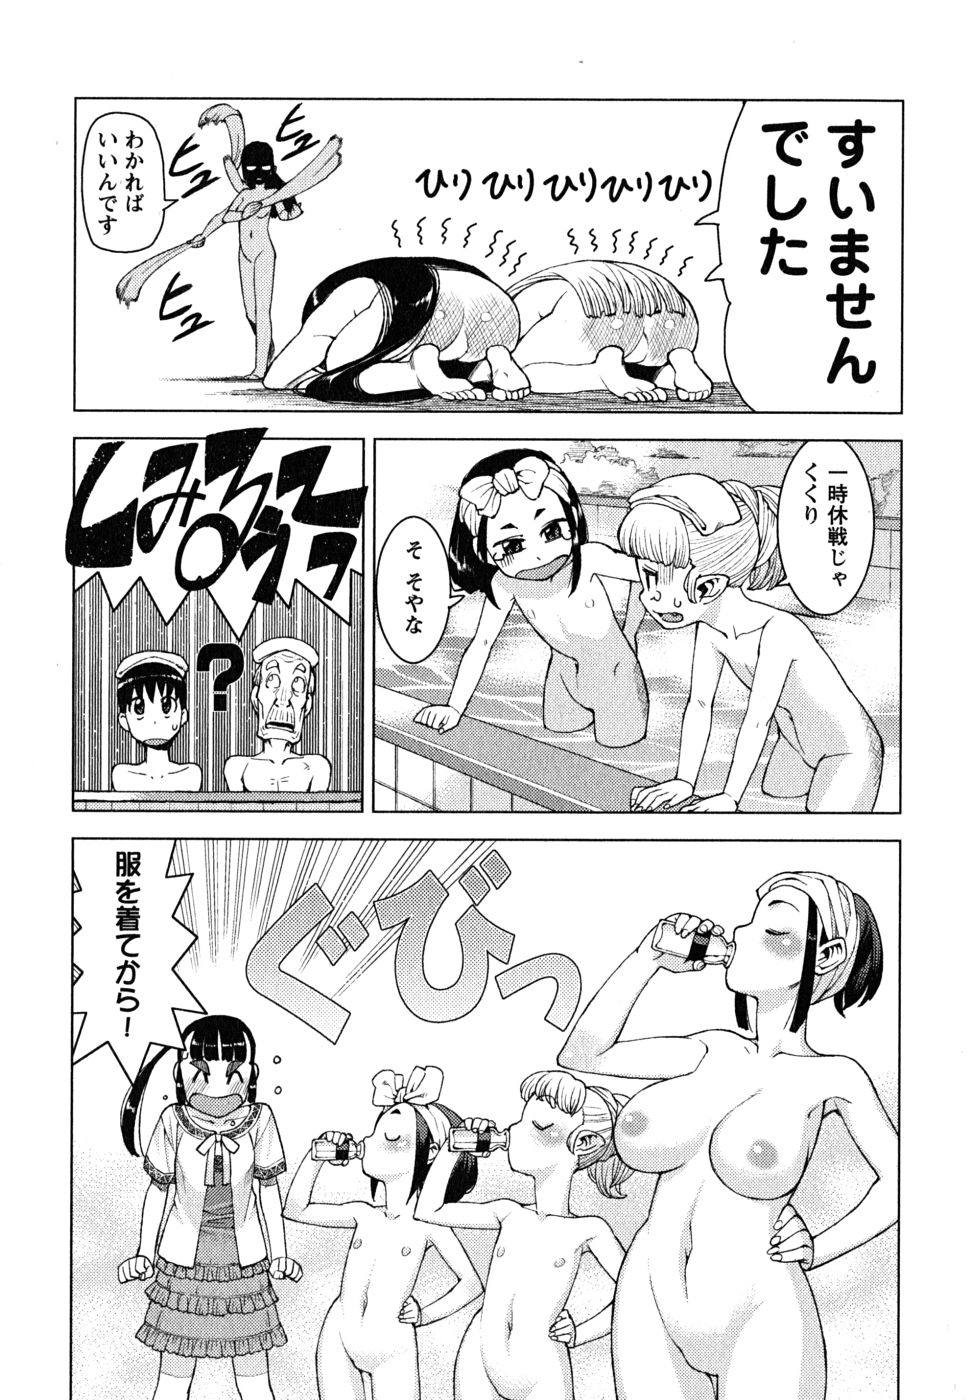 Tsugumomo manga unzensiert